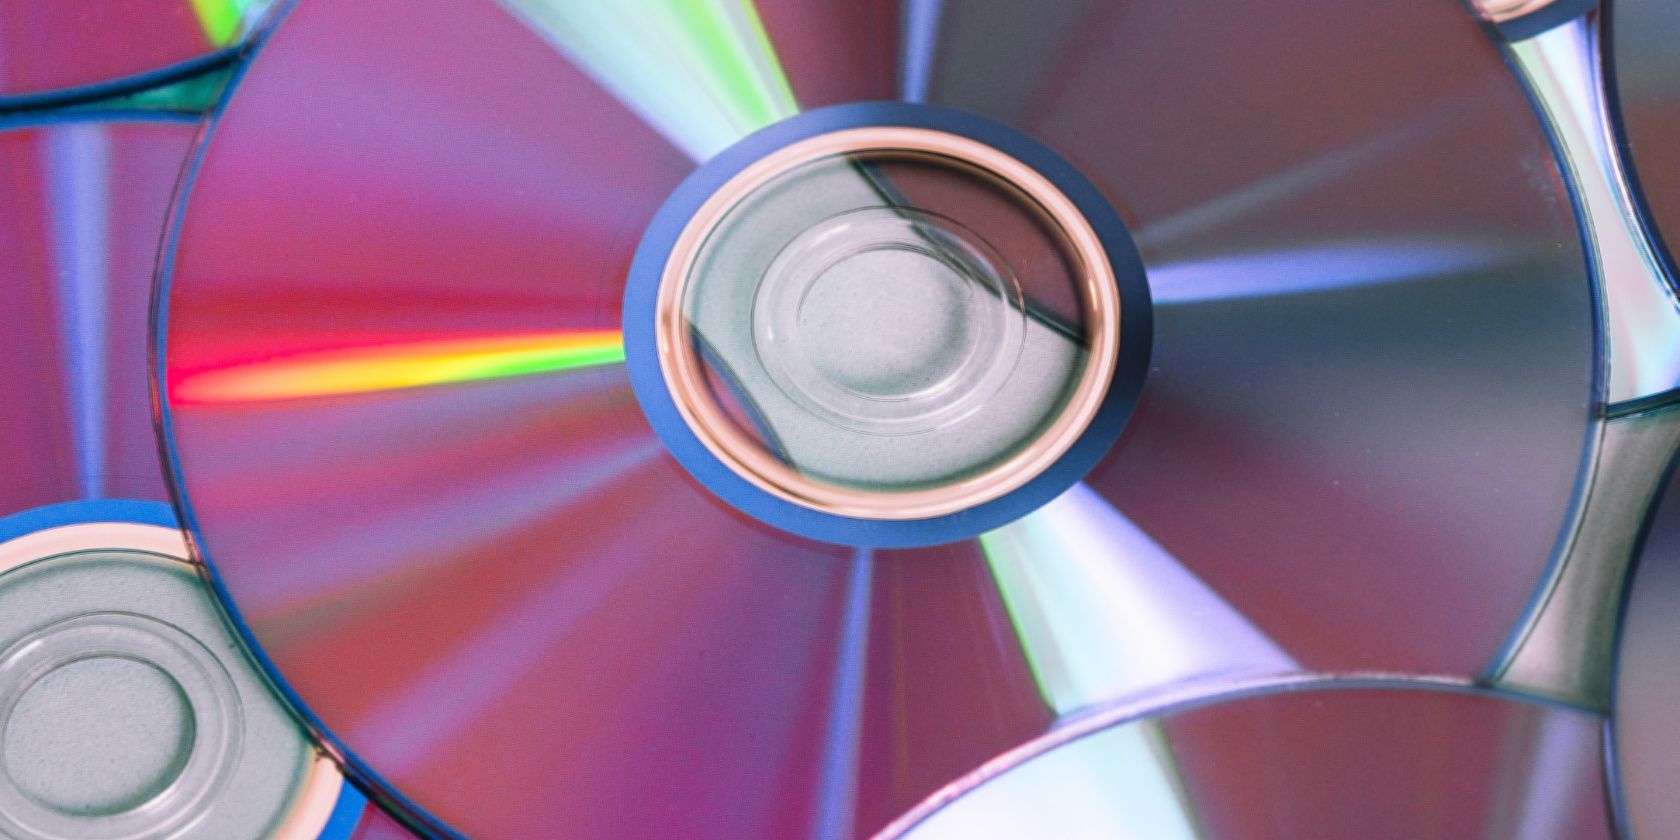 CD-R discs